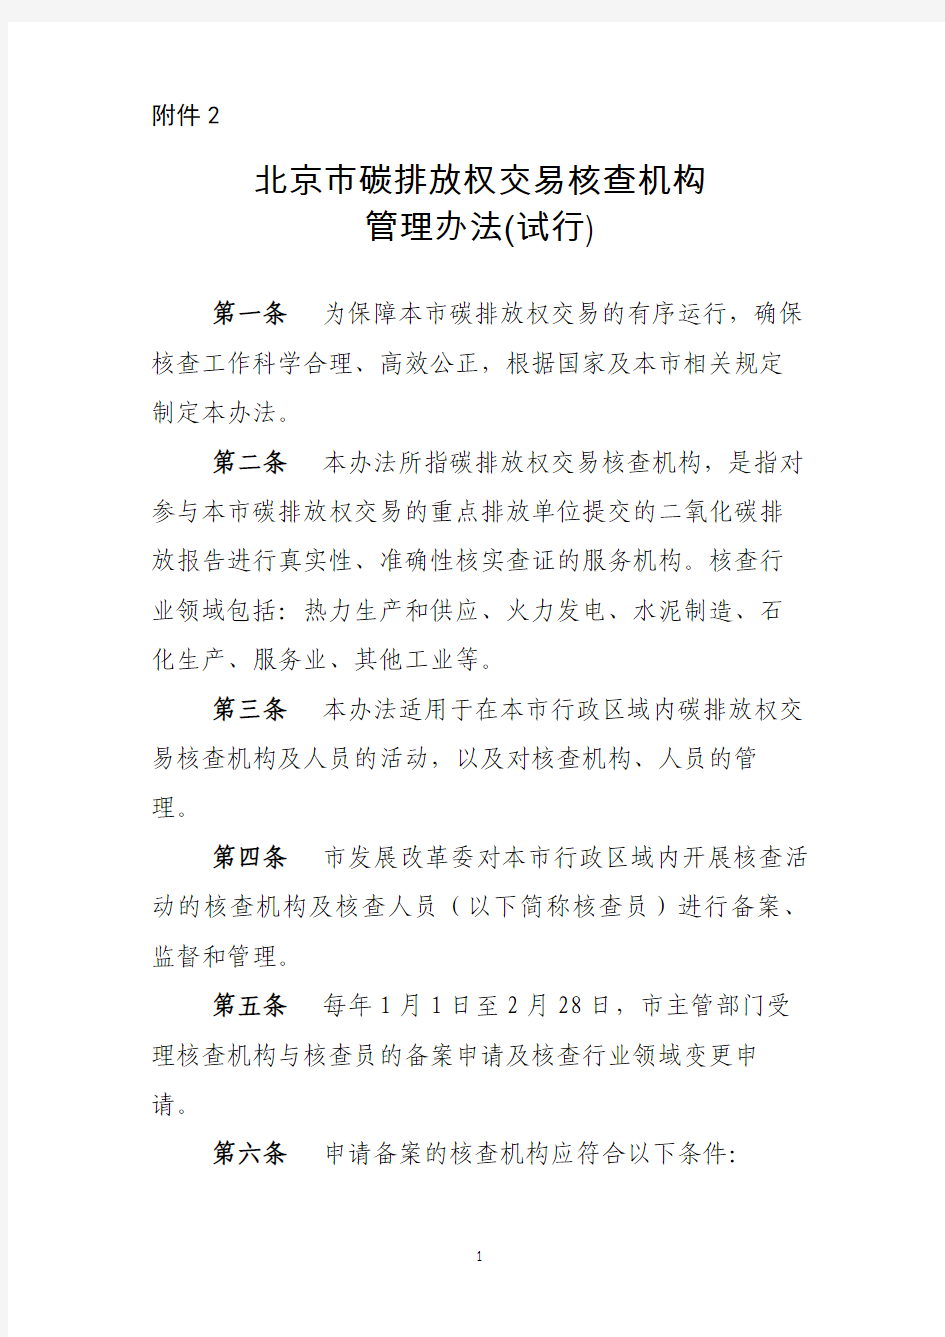 北京市碳排放权交易核查机构管理办法(试行)